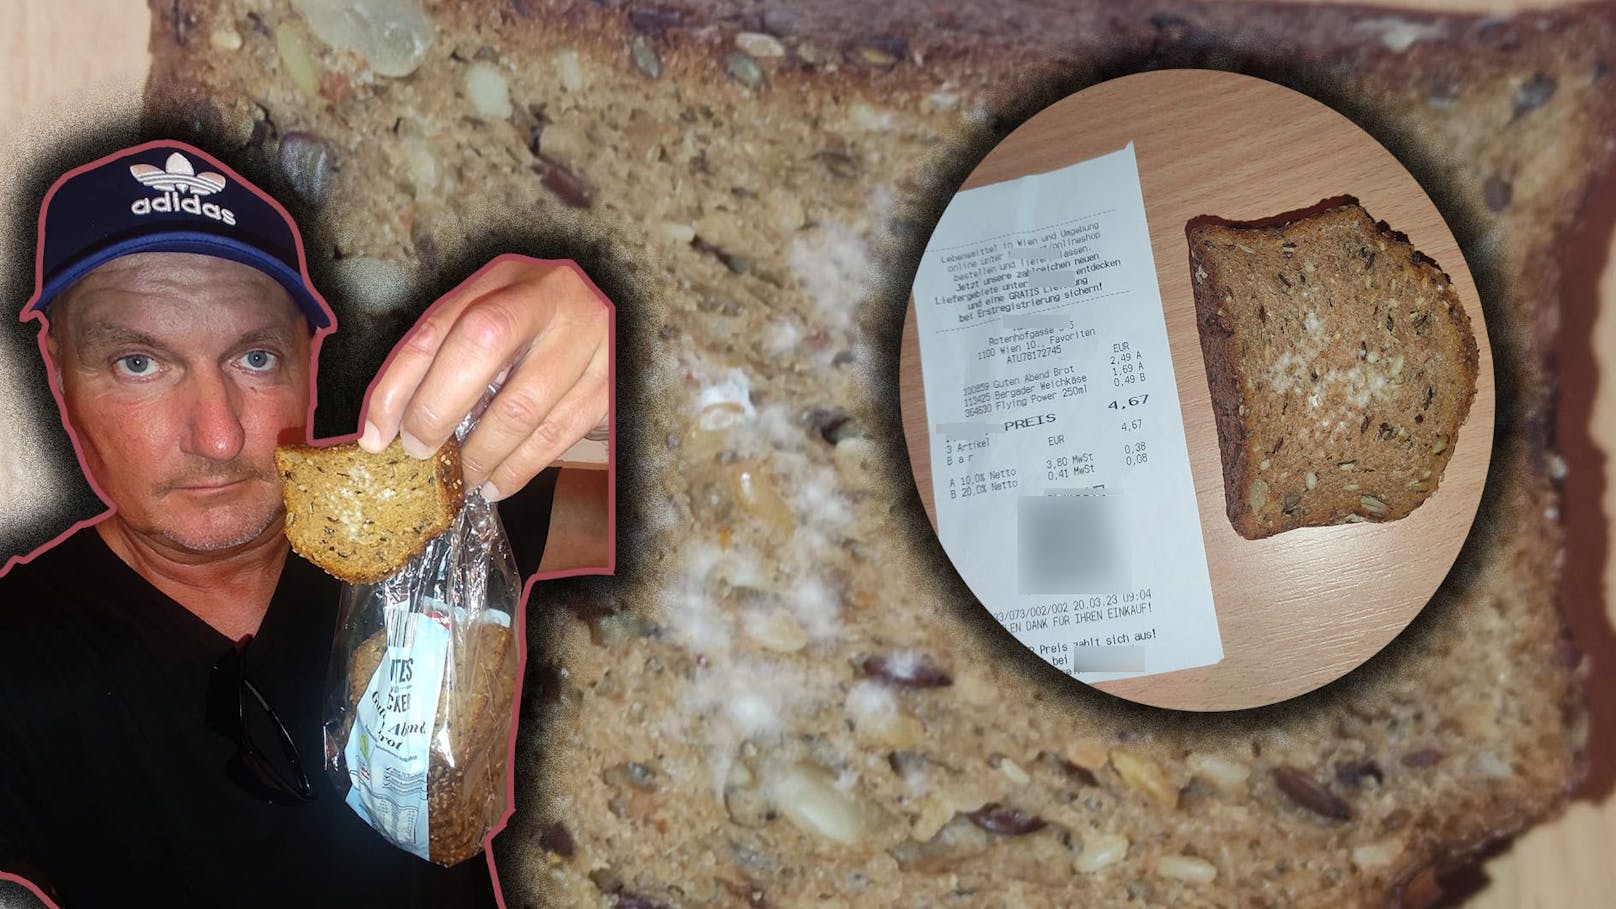 Der Wiener kaufte sich am Montag eine Packung Brot - der Inhalt war komplett verschimmelt. 